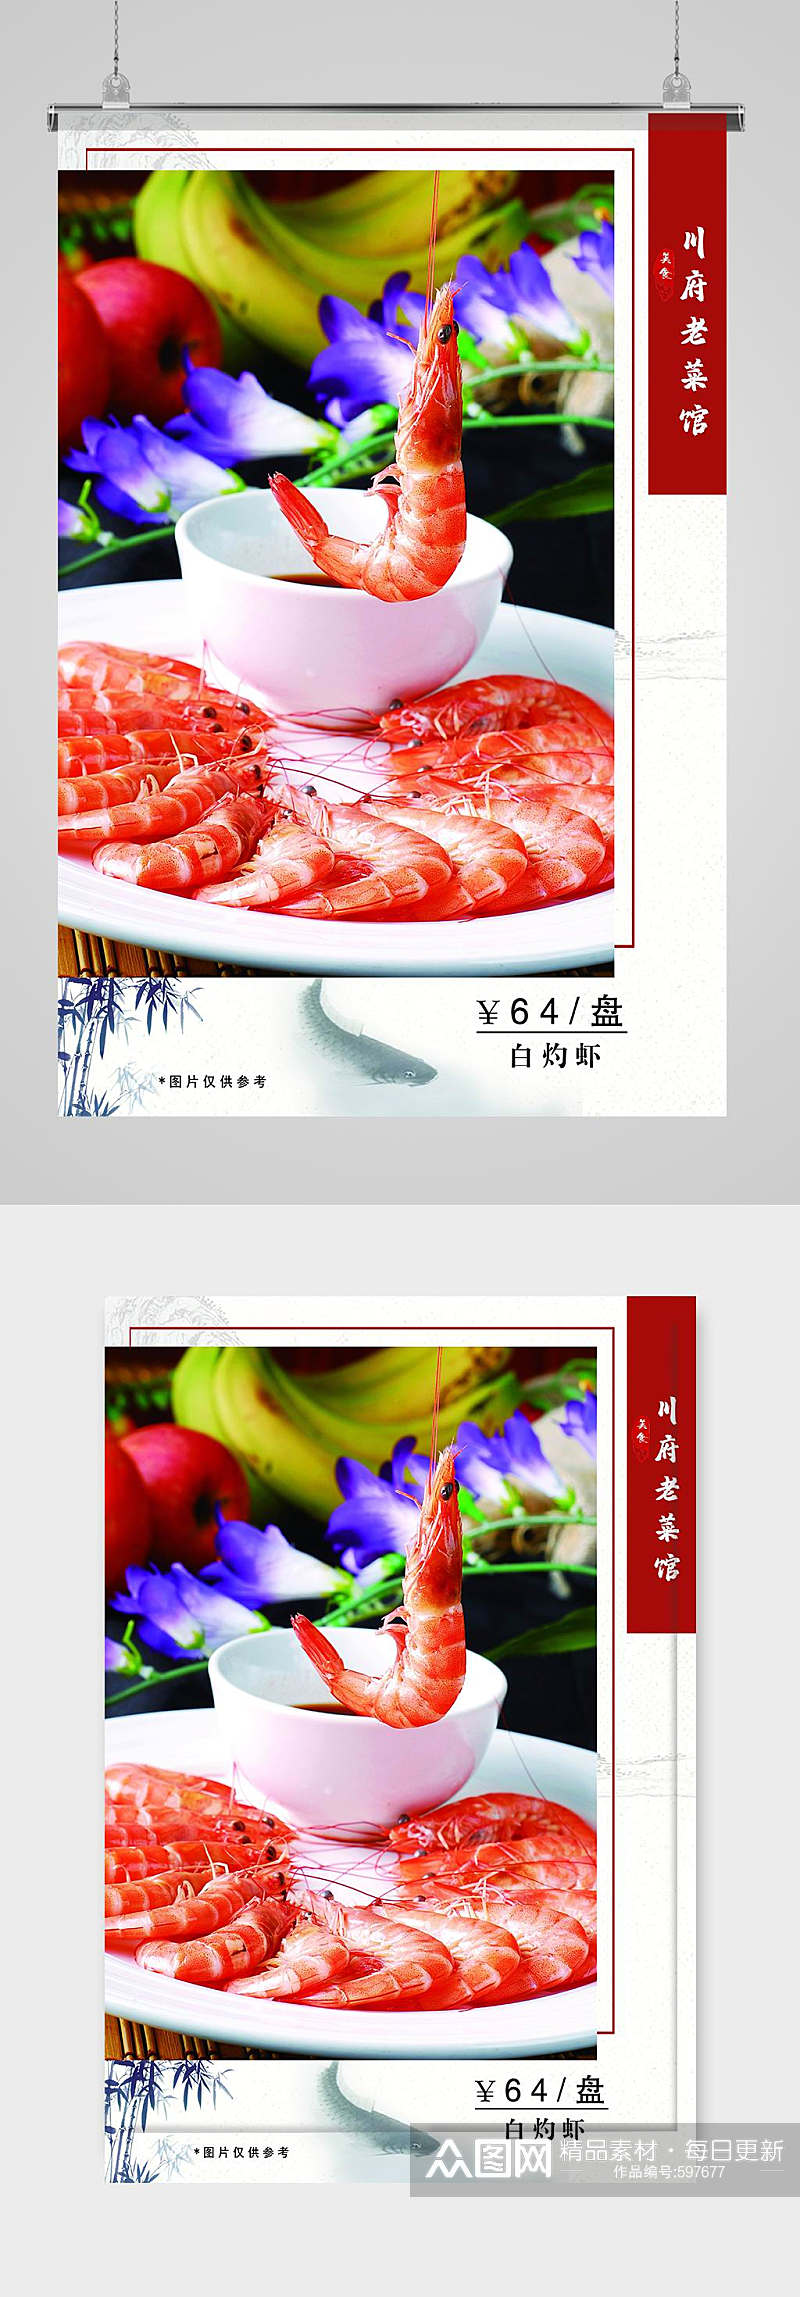 川菜美食宣传海报素材